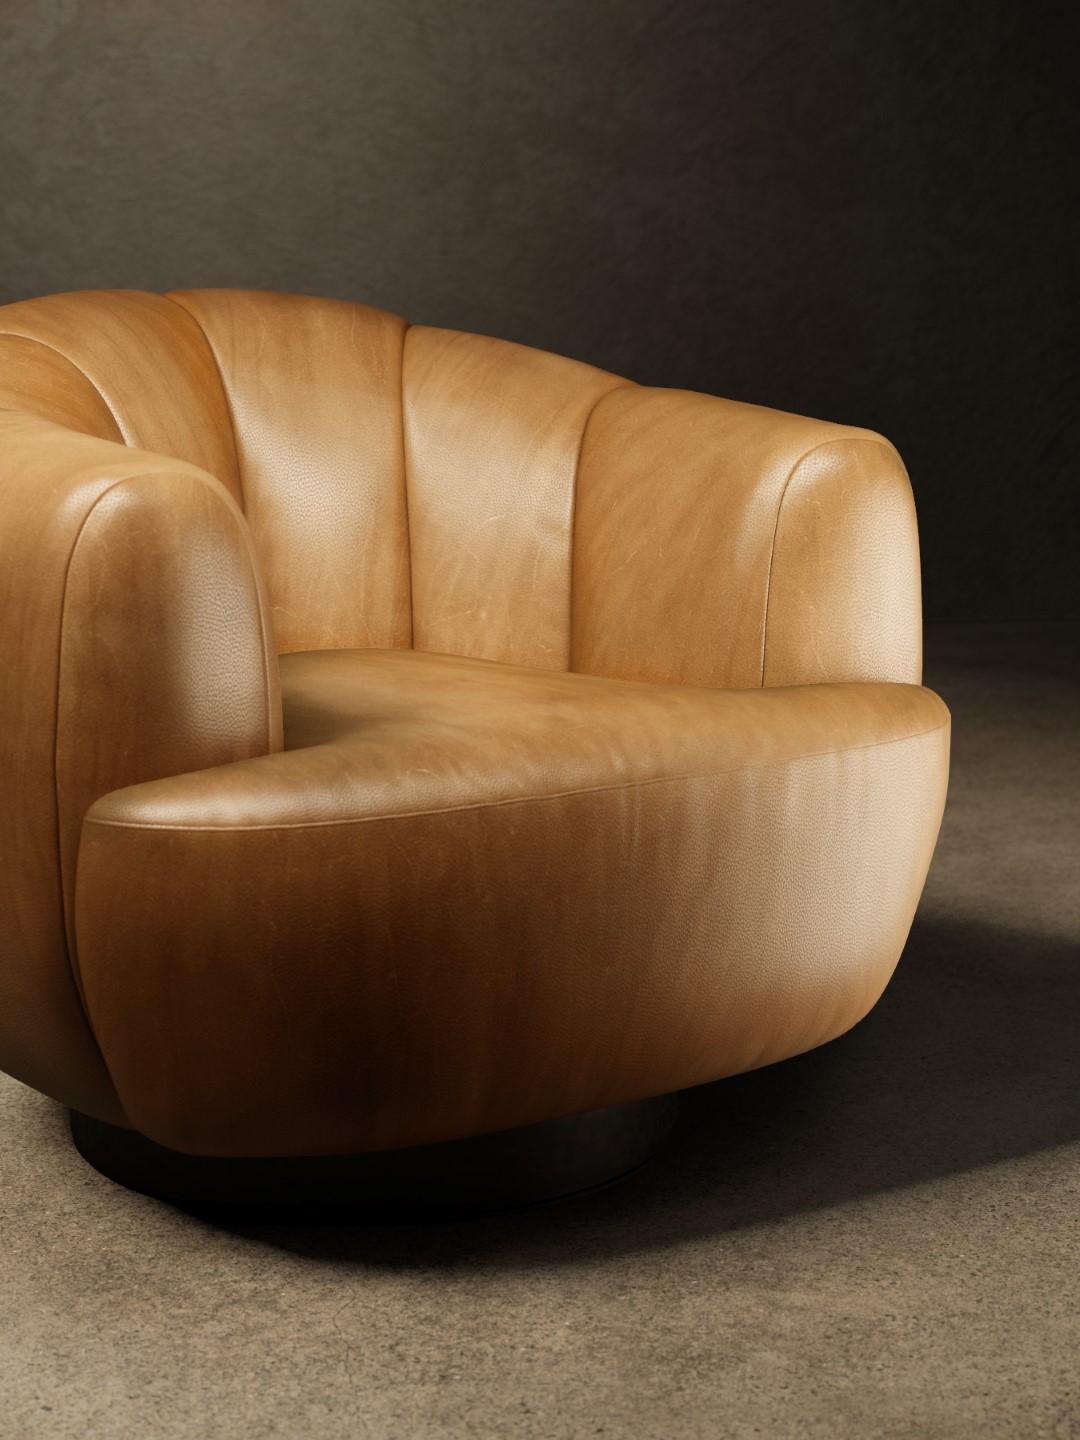 Der Sessel Ornella besteht aus einem Holzrahmen, der mit Polyurethanschaum gepolstert und mit einer Deckschicht aus Acrylfaser überzogen ist. Die Rückenlehne zeichnet sich durch eine große vertikale Steppung aus, während elastische Gurte den Komfort